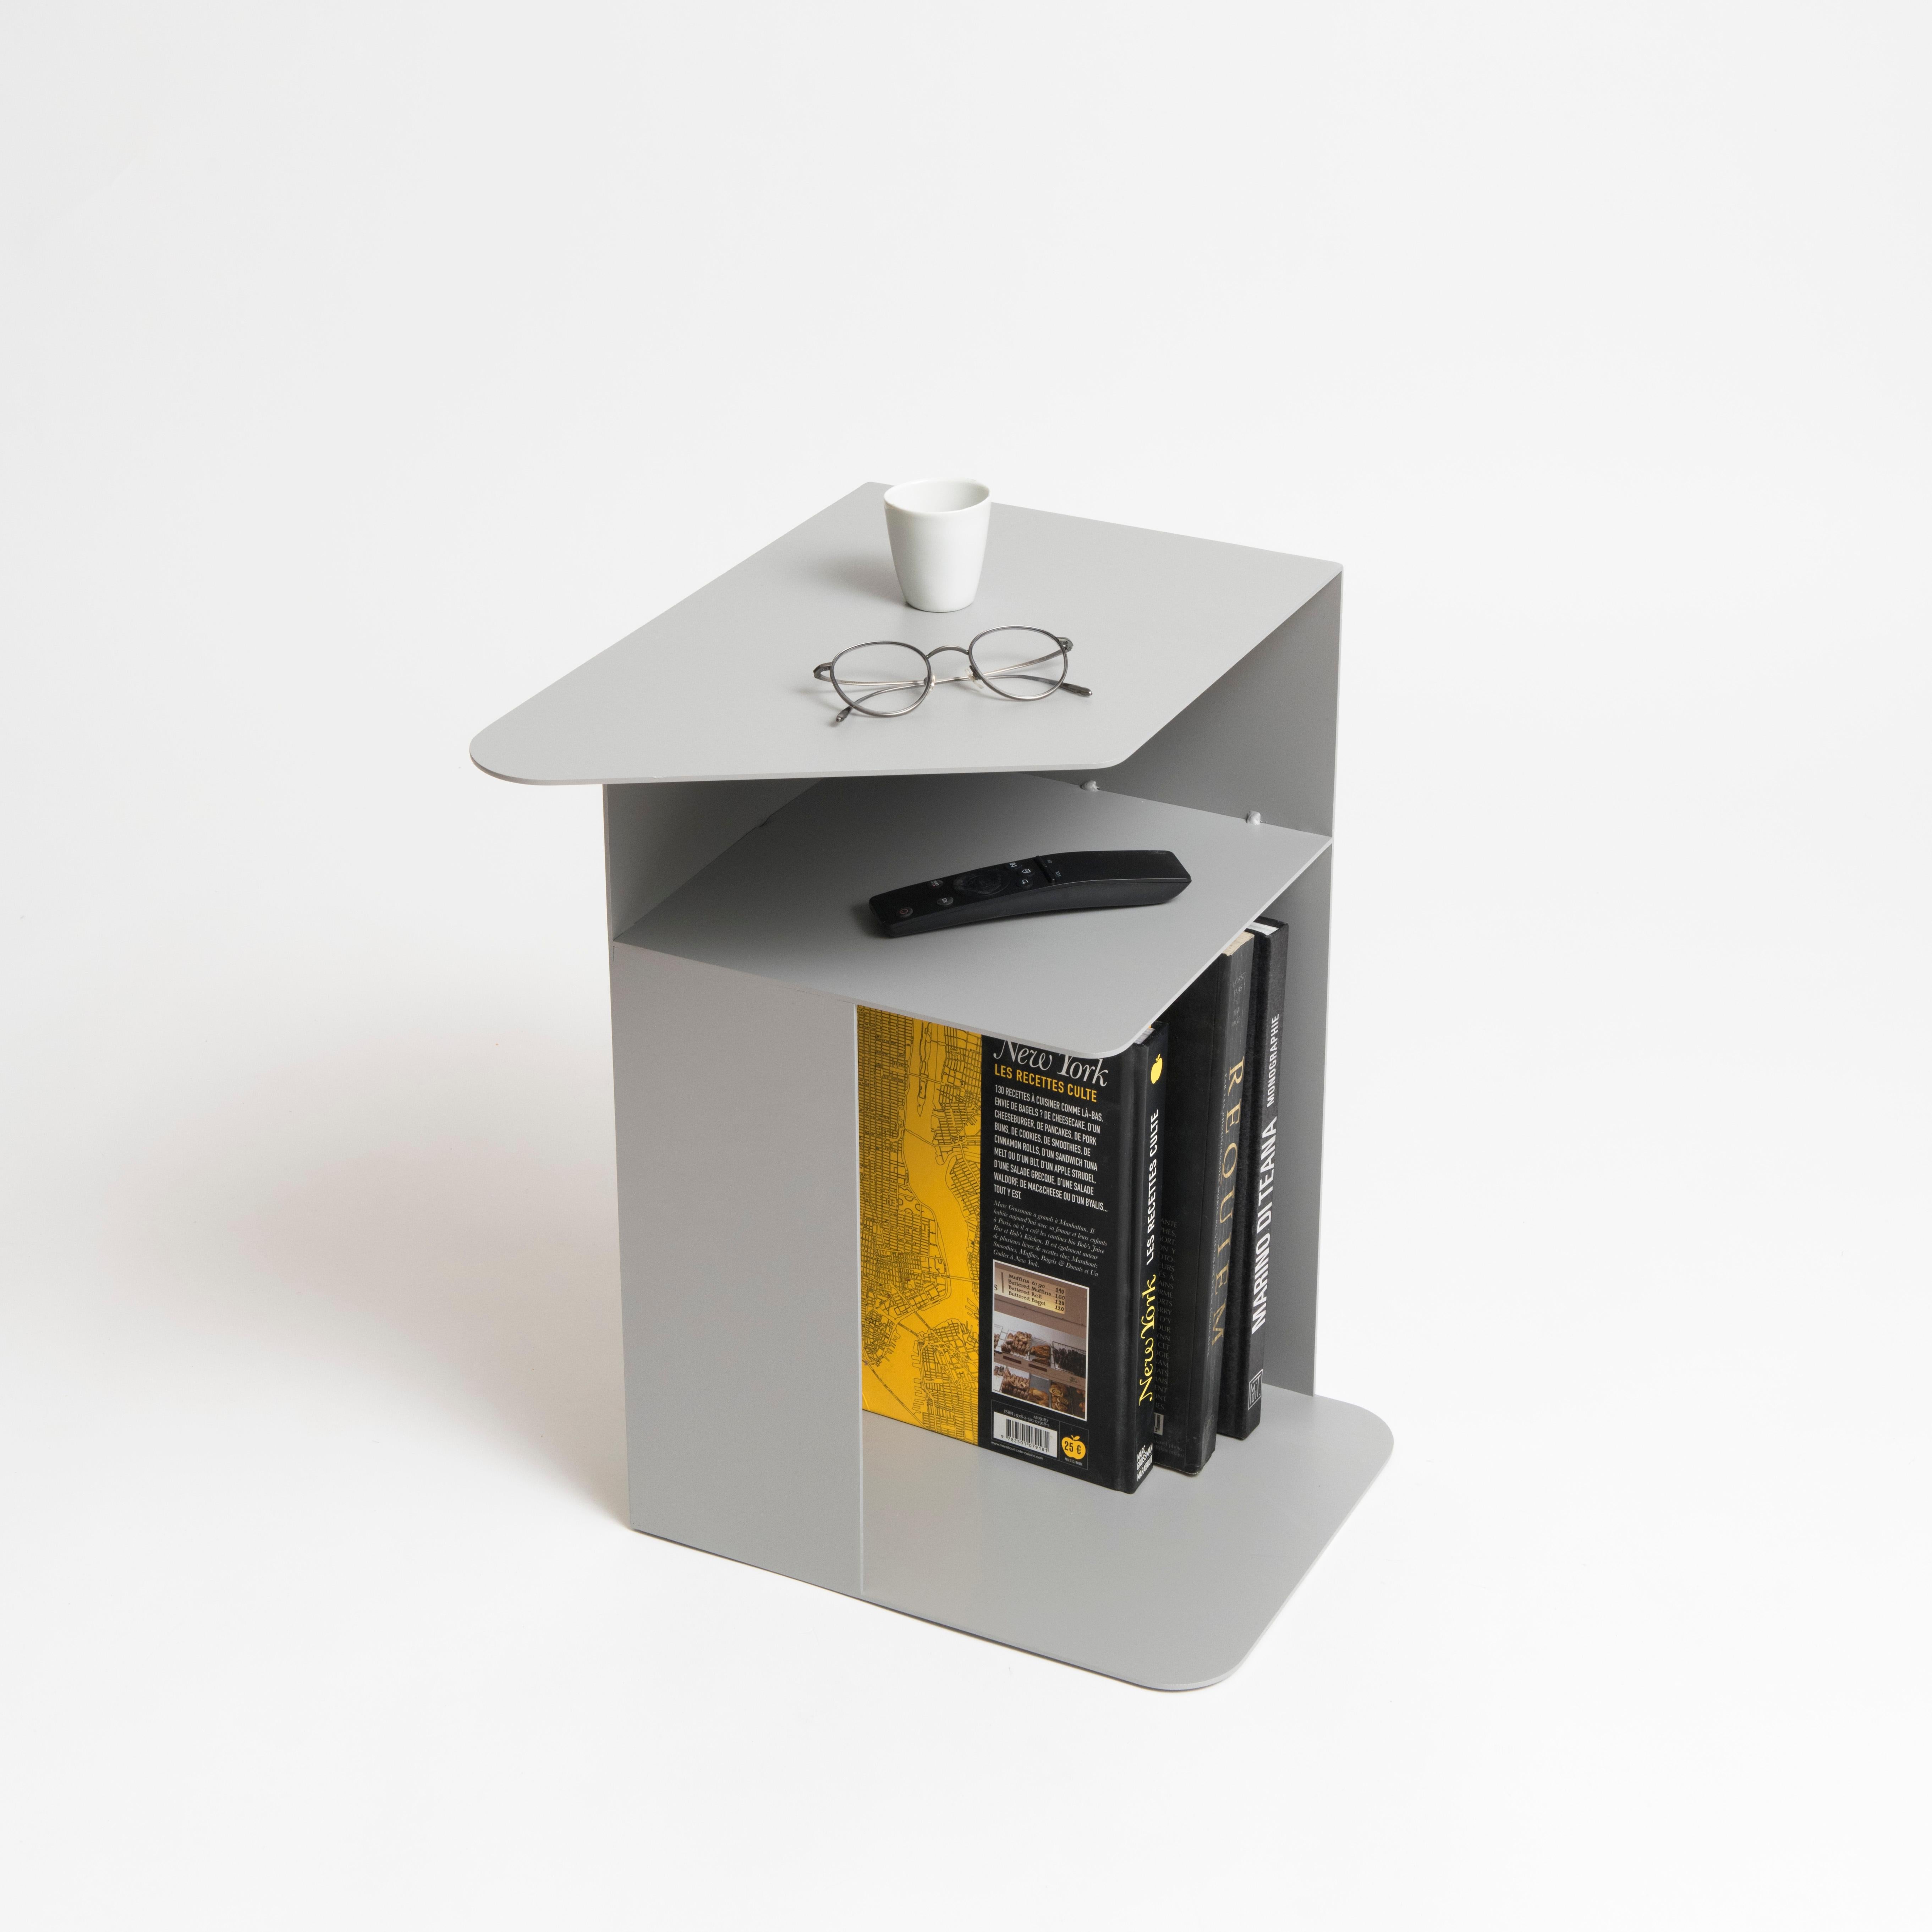 Minimalistischer Beistelltisch aus Aluminium in modernem Design für den Arbeitsbereich, den Wohnbereich oder das Büro. om26 ist mit einem Regal und einer Ablagefläche für Bücher (oder Flaschen) ausgestattet. Leichtes Produkt, leicht zu